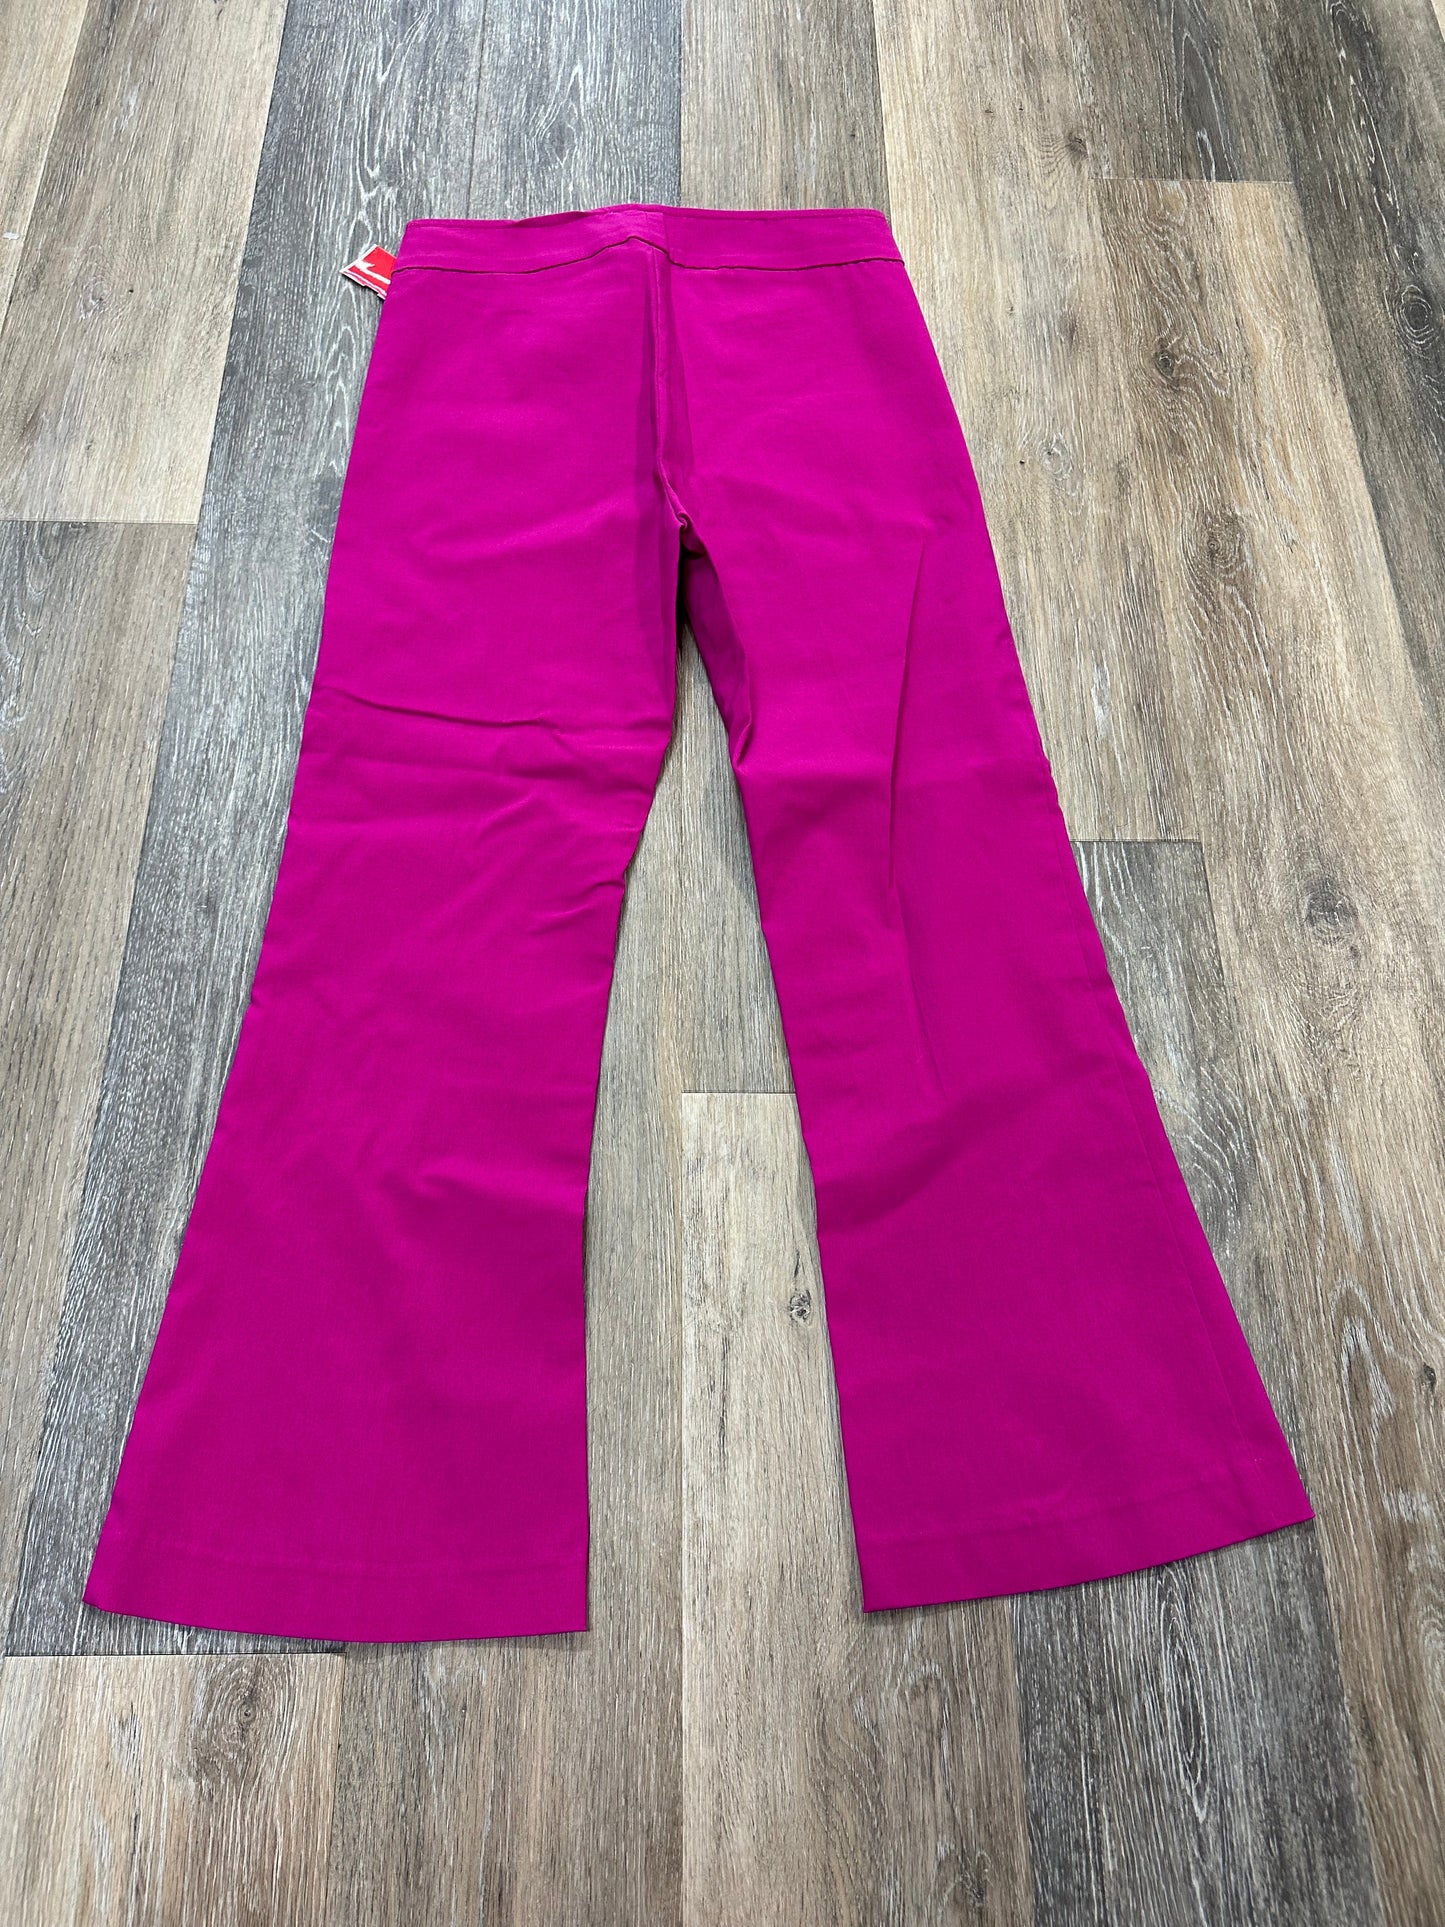 Pink Pants Designer Avenue Montaigne, Size 4